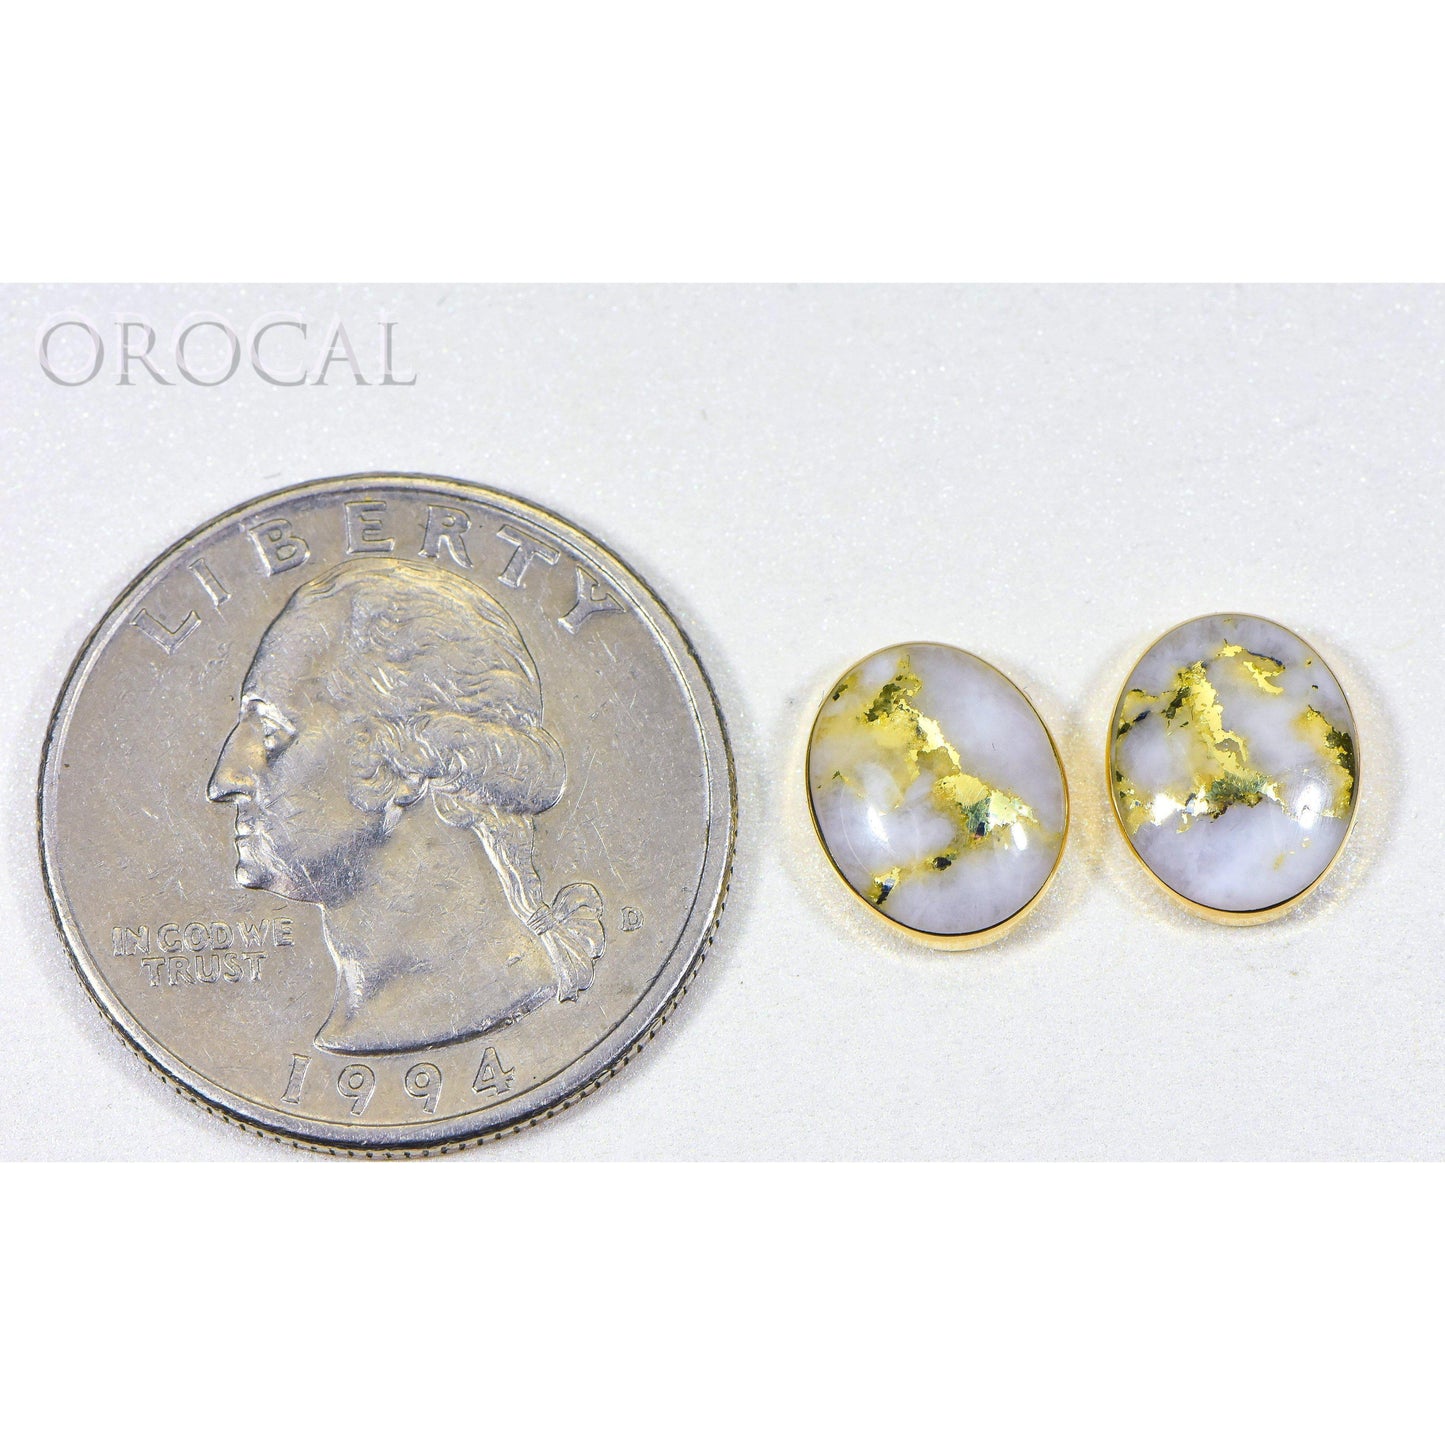 Orocal Gold Quartz Earrings Post Backs EBZ8*6Q-Destination Gold Detectors